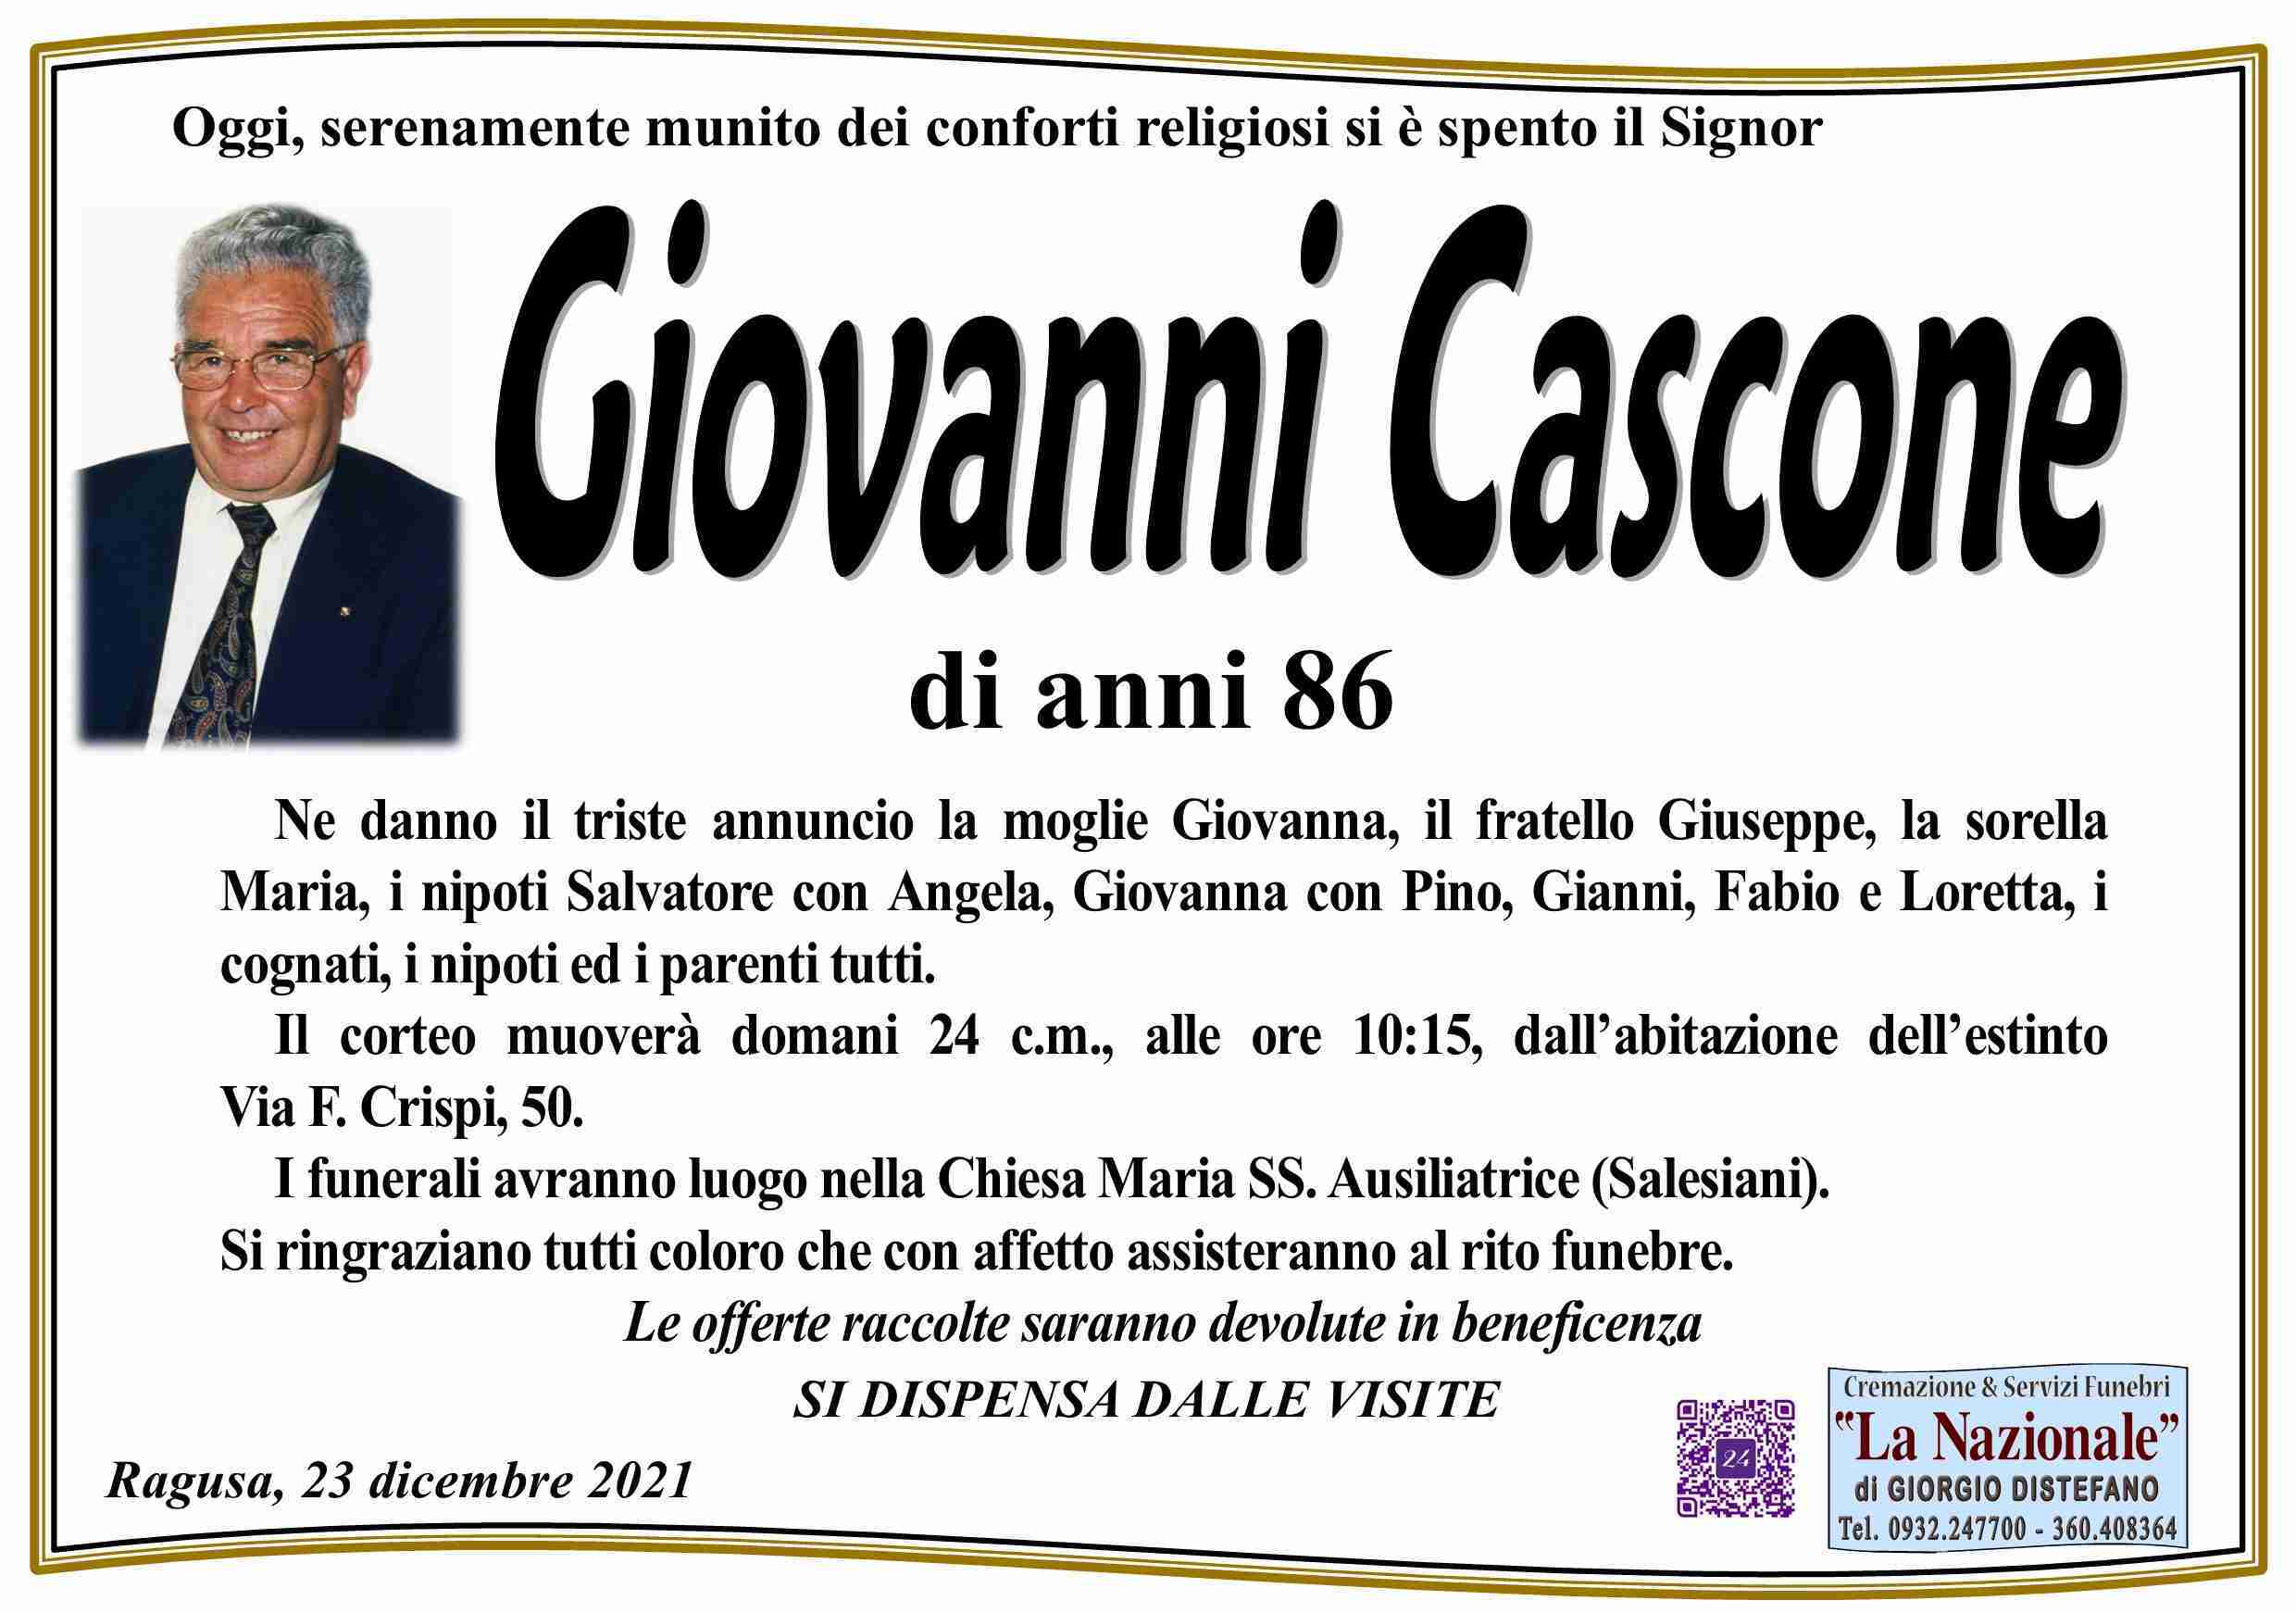 Giovanni Cascone